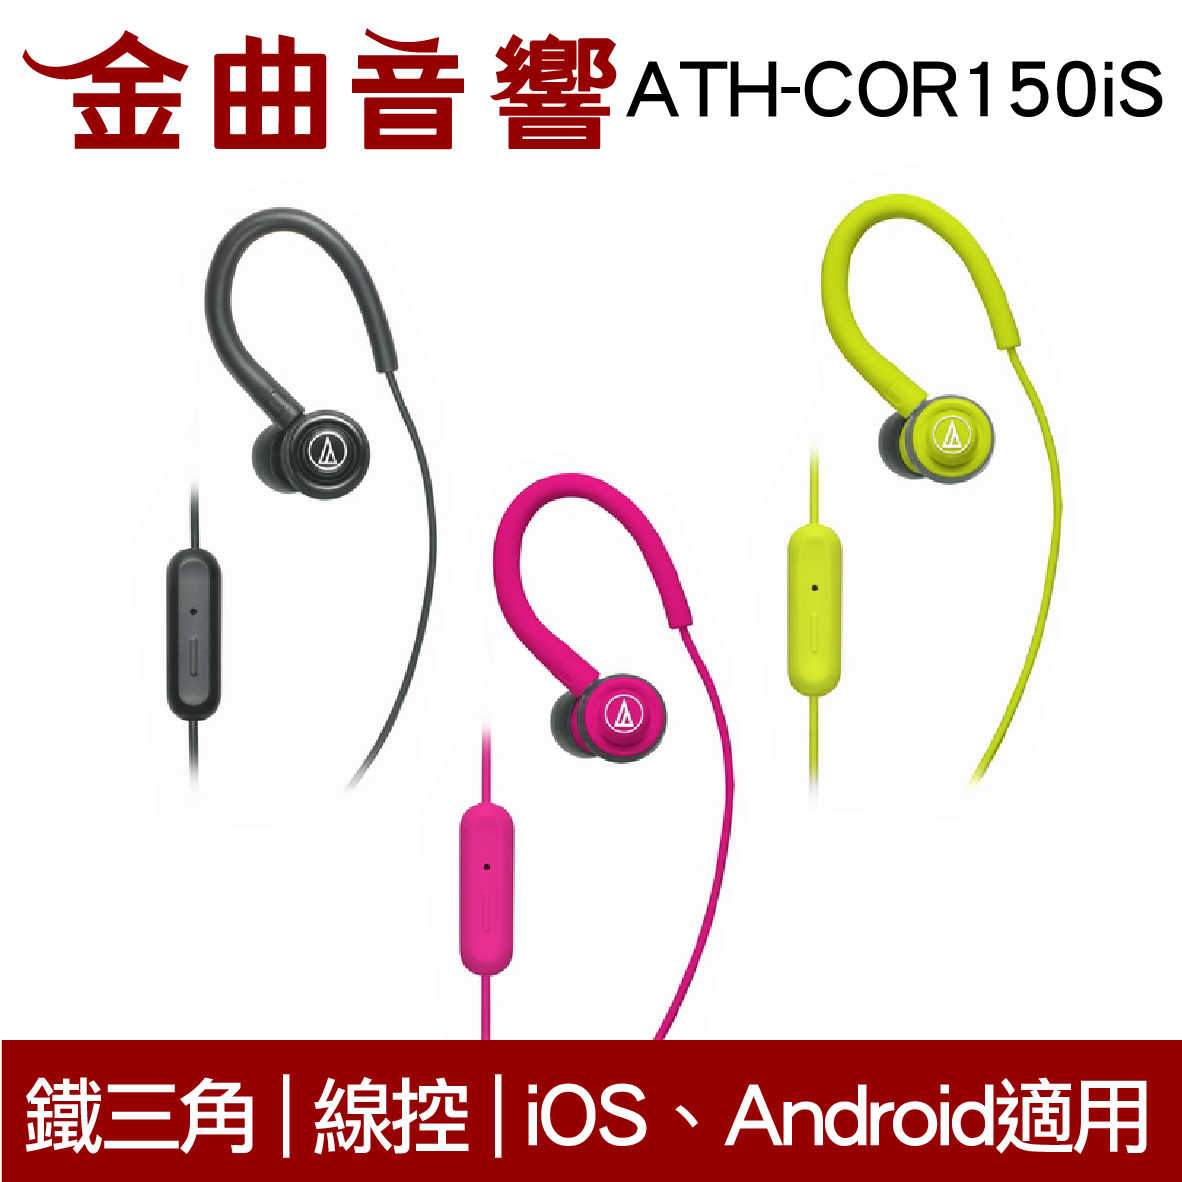 鐵三角 ATH-COR150iS 桃紅 線控耳道式耳機 IPhone IOS 安卓適用 | 金曲音響